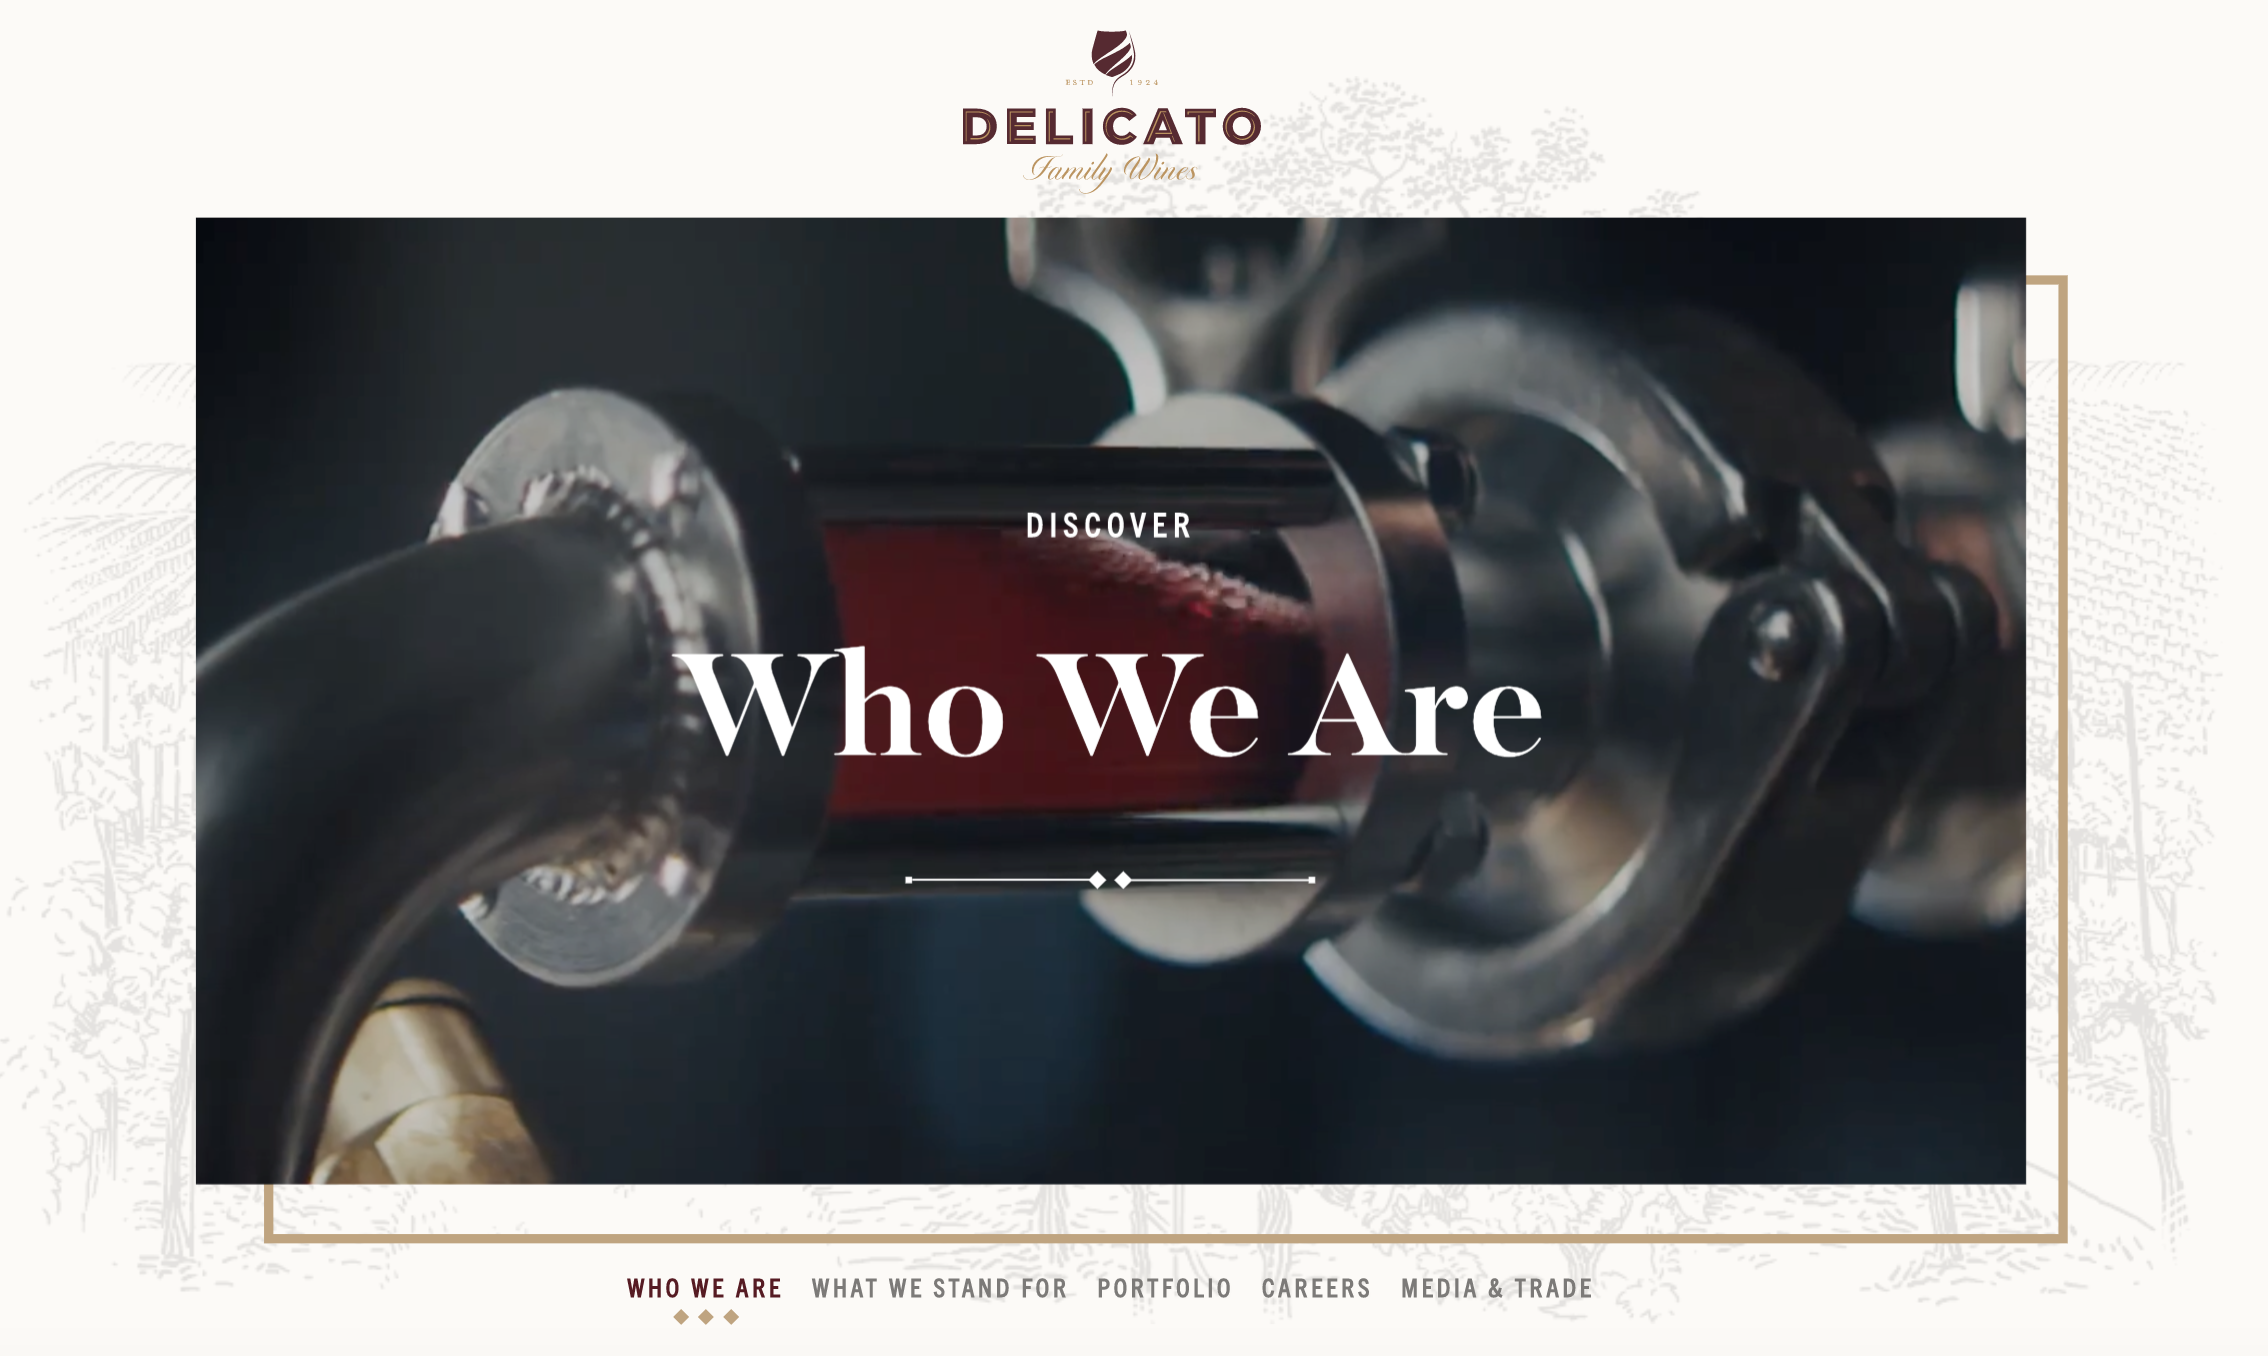 Vega Awards - Delicato Family Wines, Corporate Website Refresh 